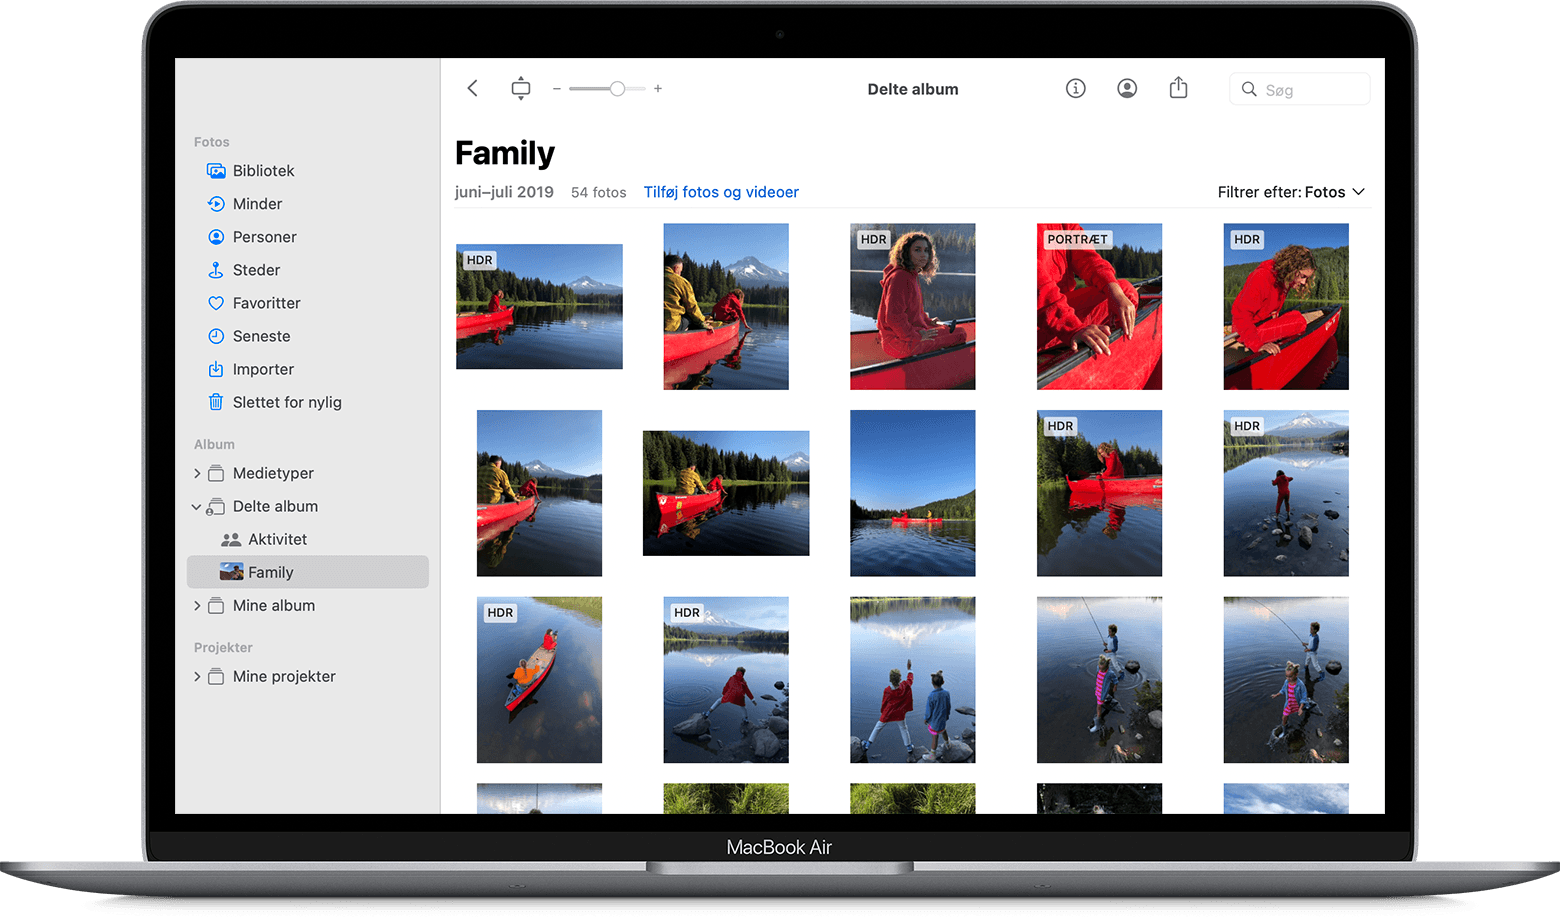 MacBook Air med programmet Fotos, der viser et fælles familiealbum